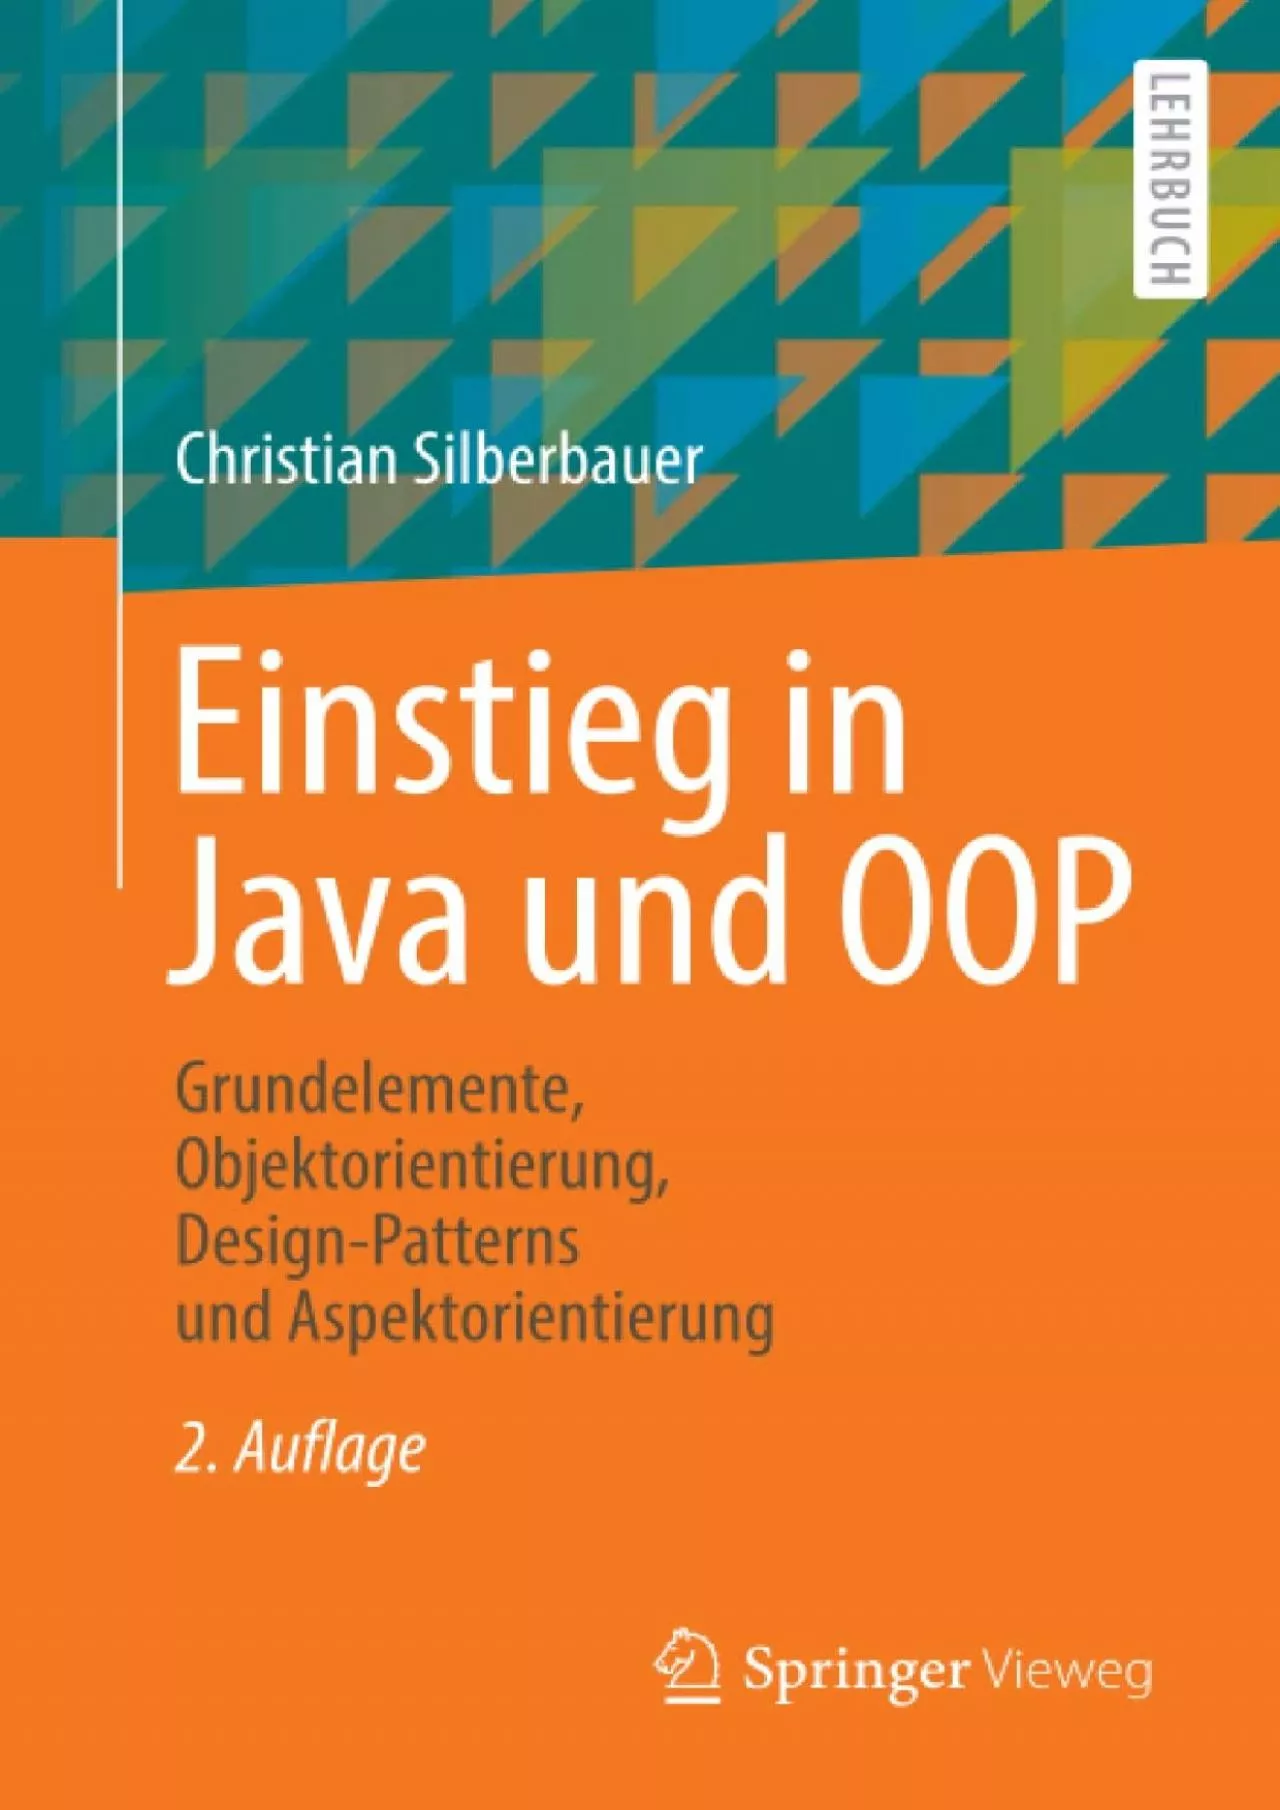 [BEST]-Einstieg in Java und OOP: Grundelemente, Objektorientierung, Design-Patterns und